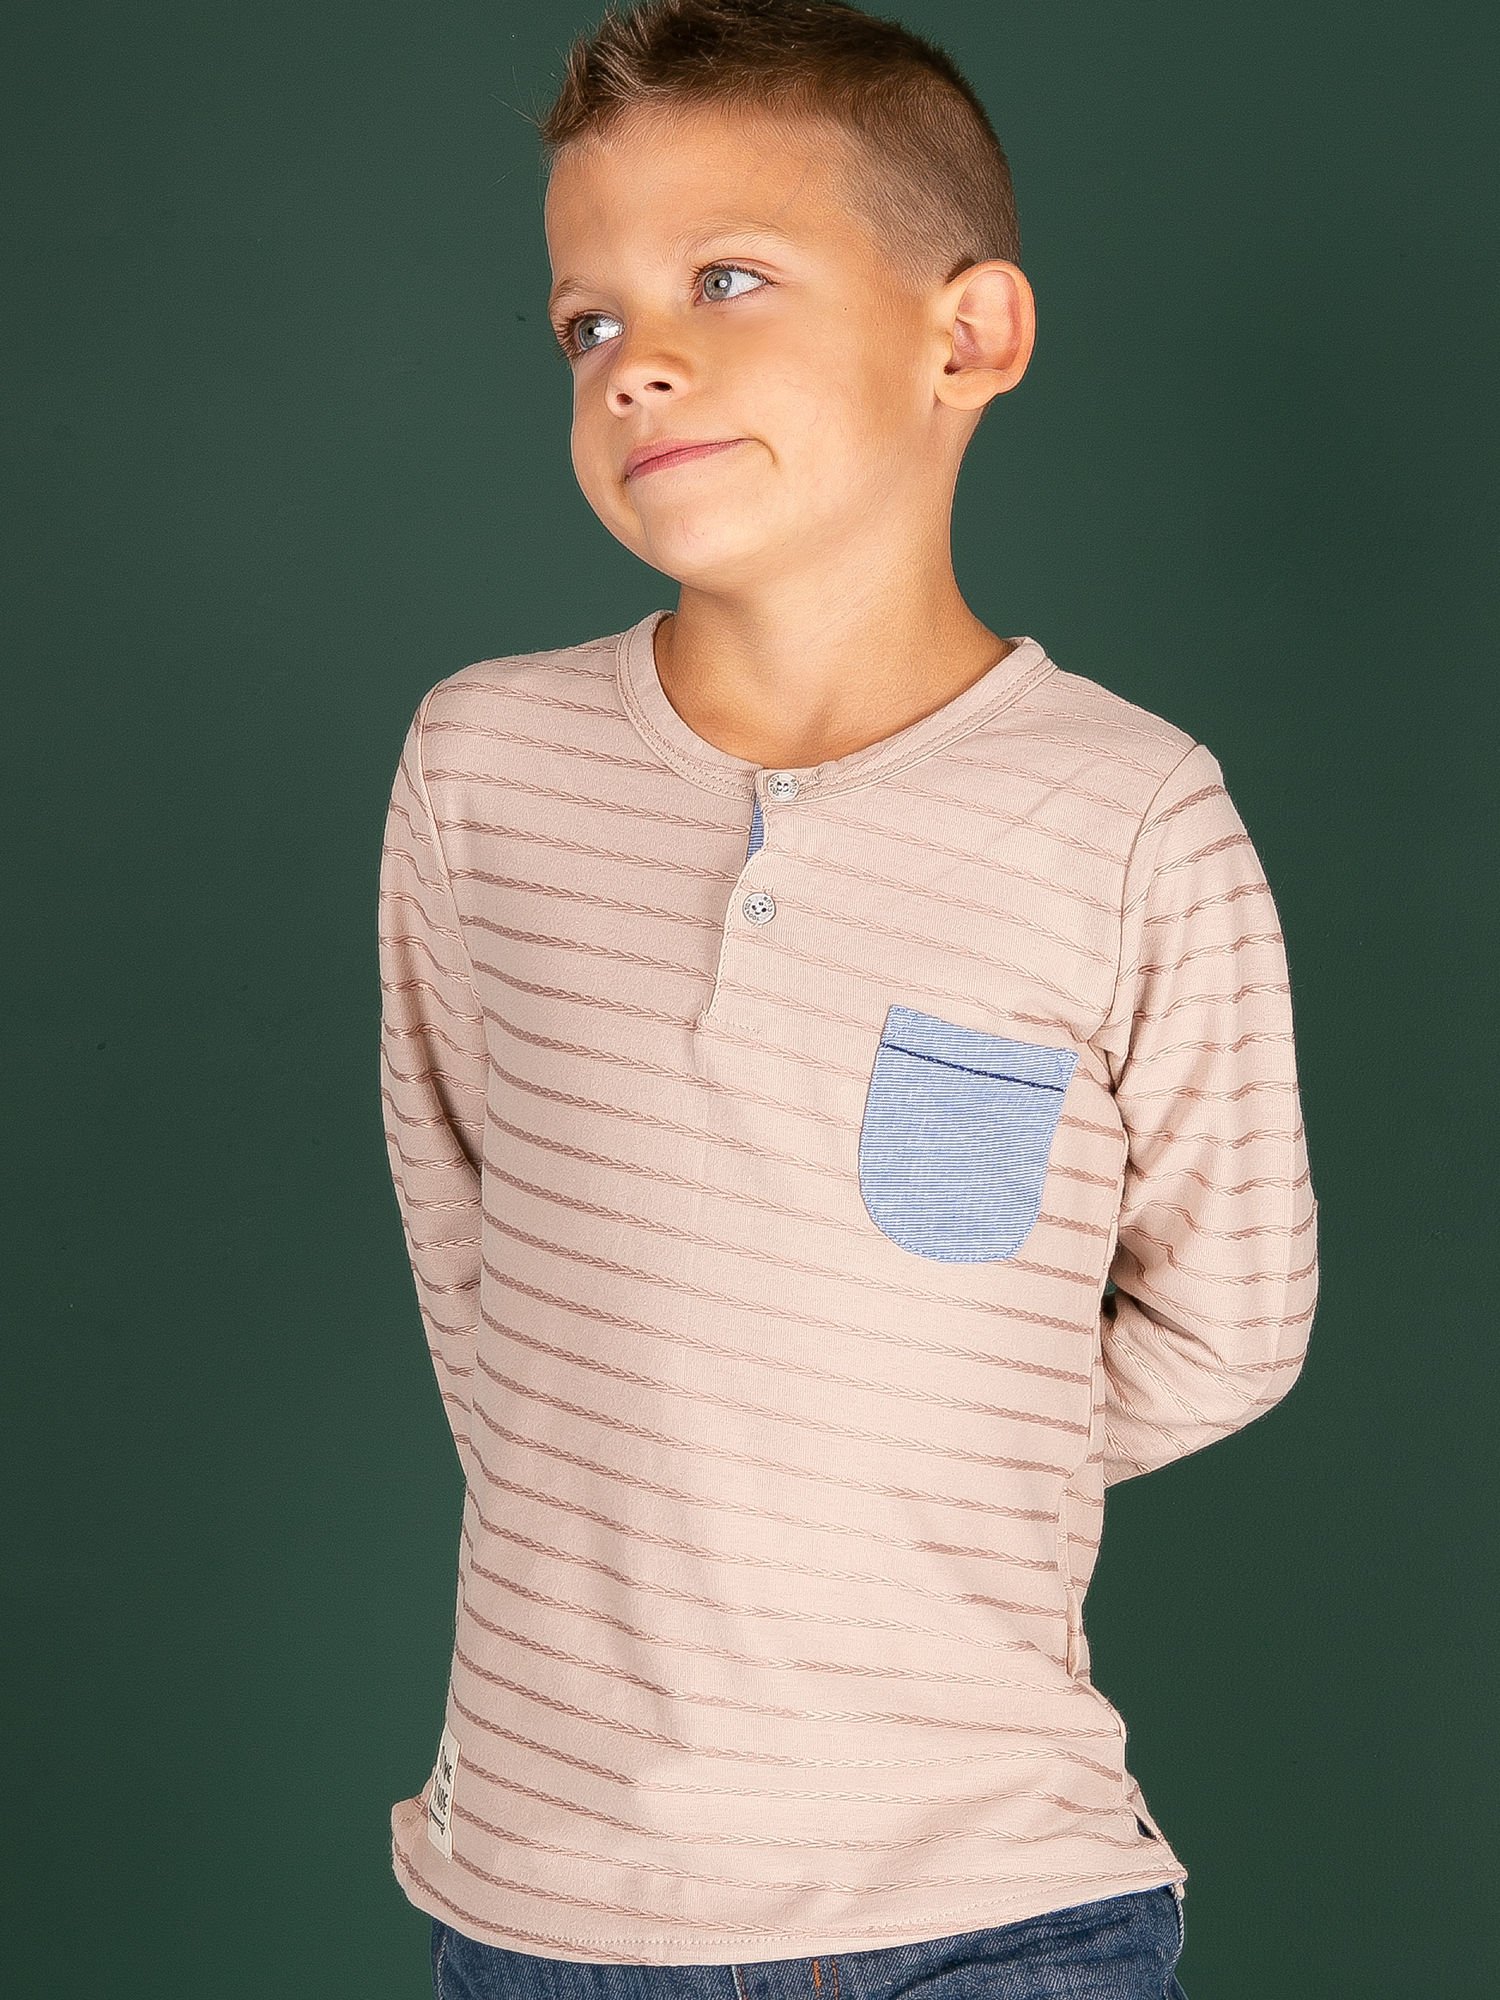 Chlapčenské tričko s kapsičkou TY-BZ-9111.98-beige Veľkosť: 98